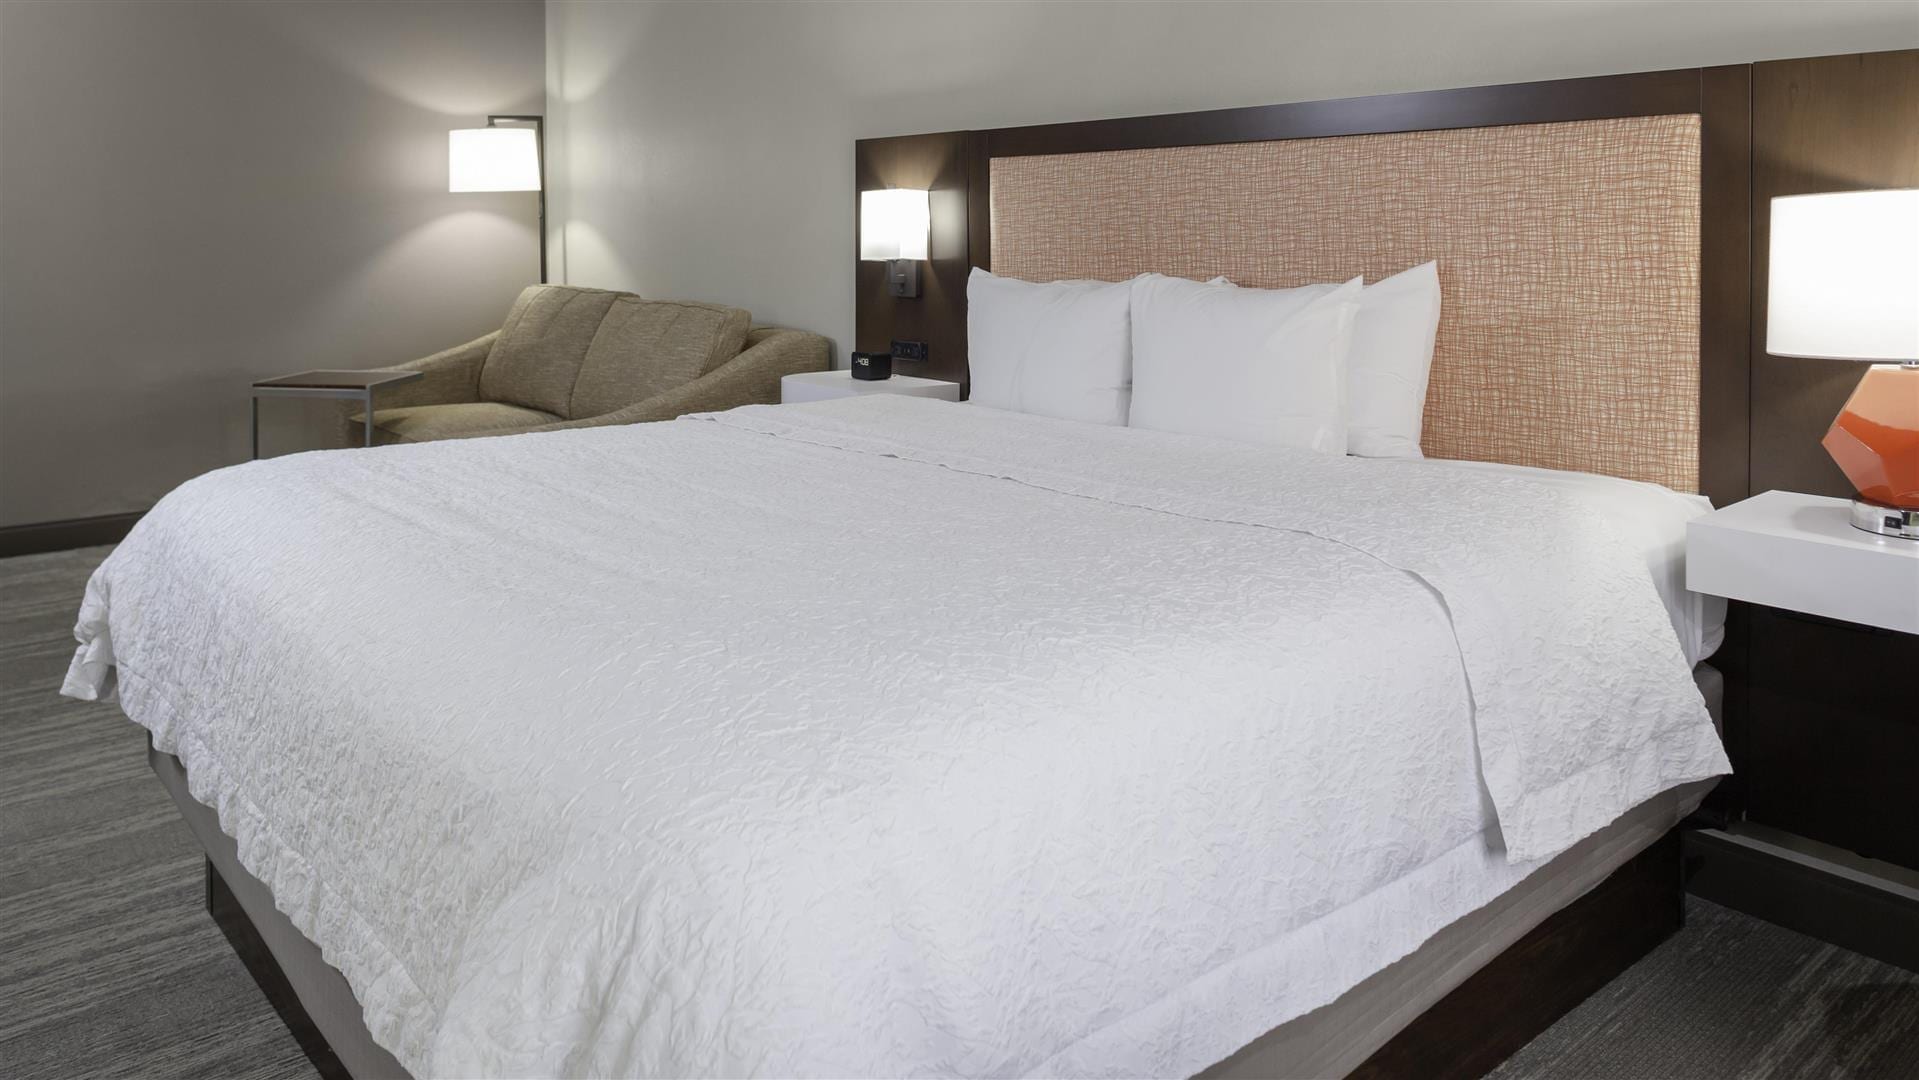 Hampton-Inn & Suites room remodel